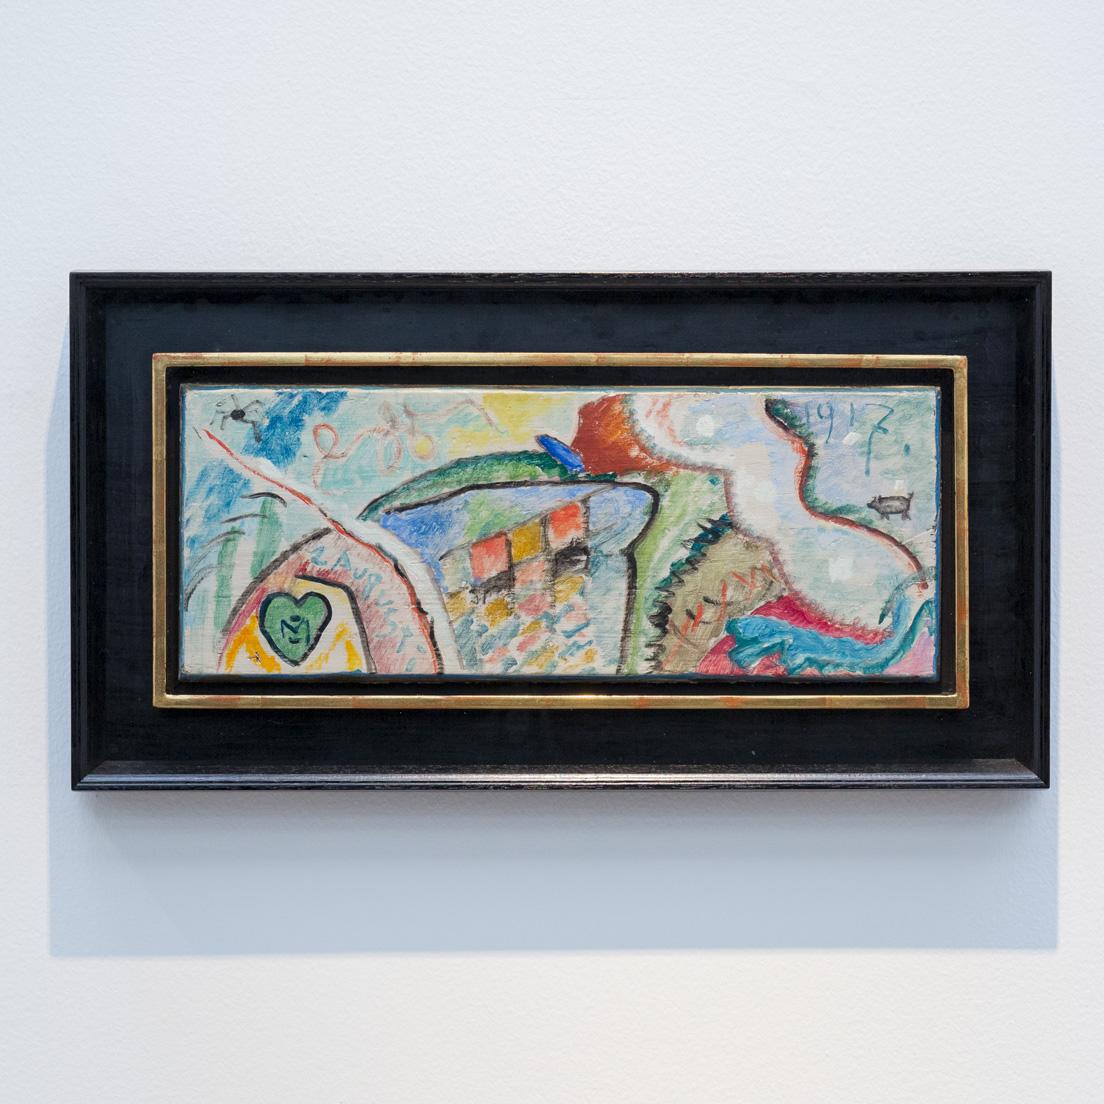 ガブリエーレ・ミュンター《抽象的コンポジション》1917年、横浜美術館蔵。カンディンスキーのパートナーとして語られることが多いが、その色彩豊かな表現に改めて注目が集まっている。同展では20世紀に活動した女性芸術家にも意識的に光をあてている。